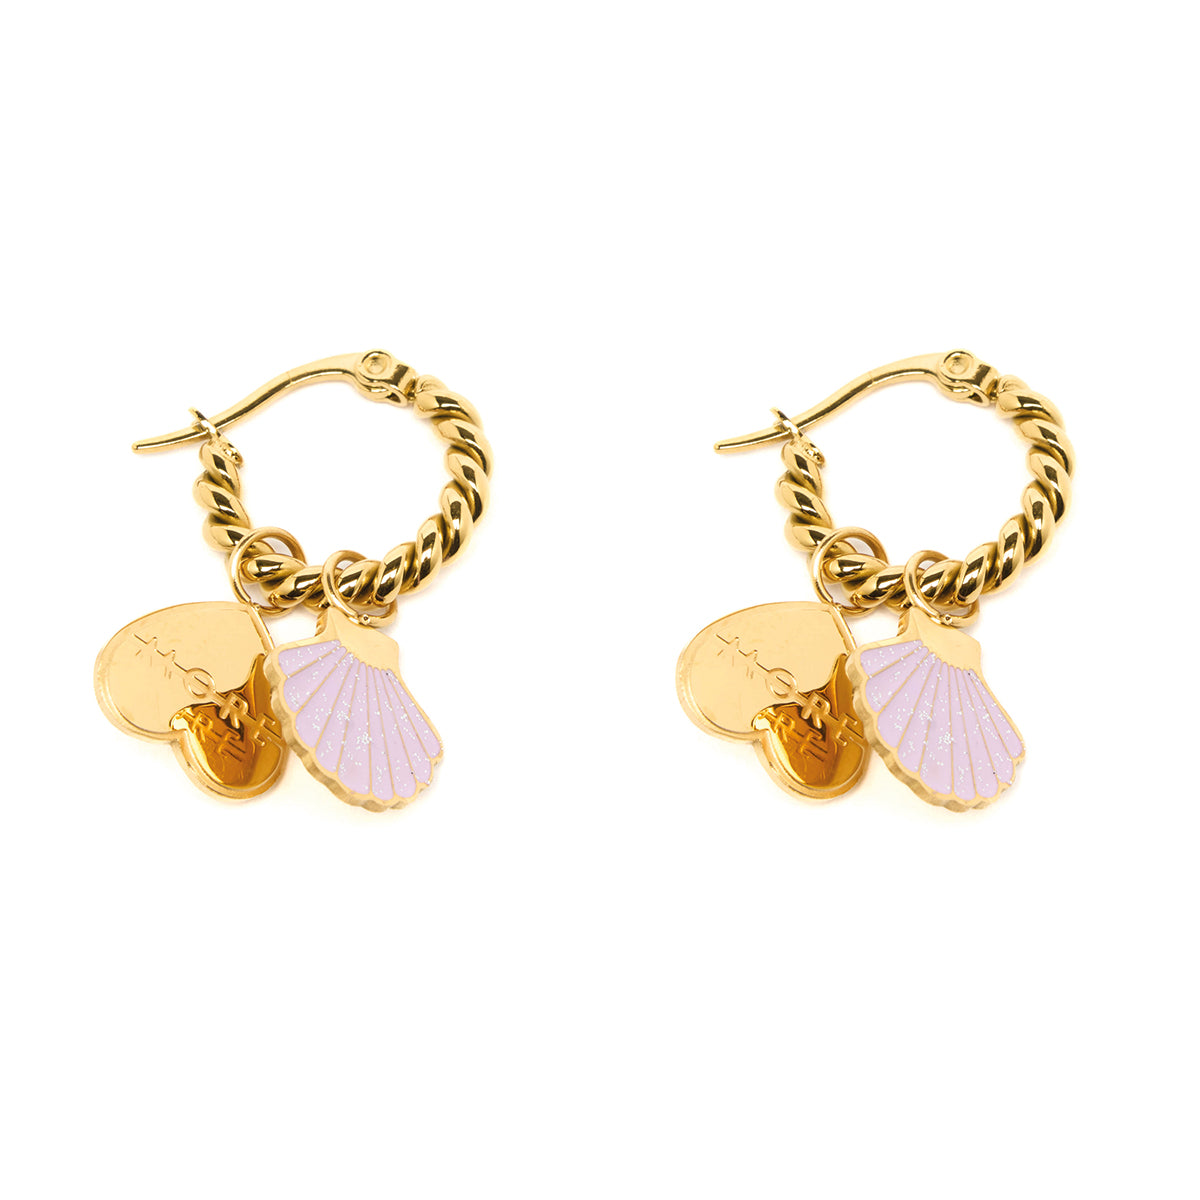 A-MORE - Seashell earrings